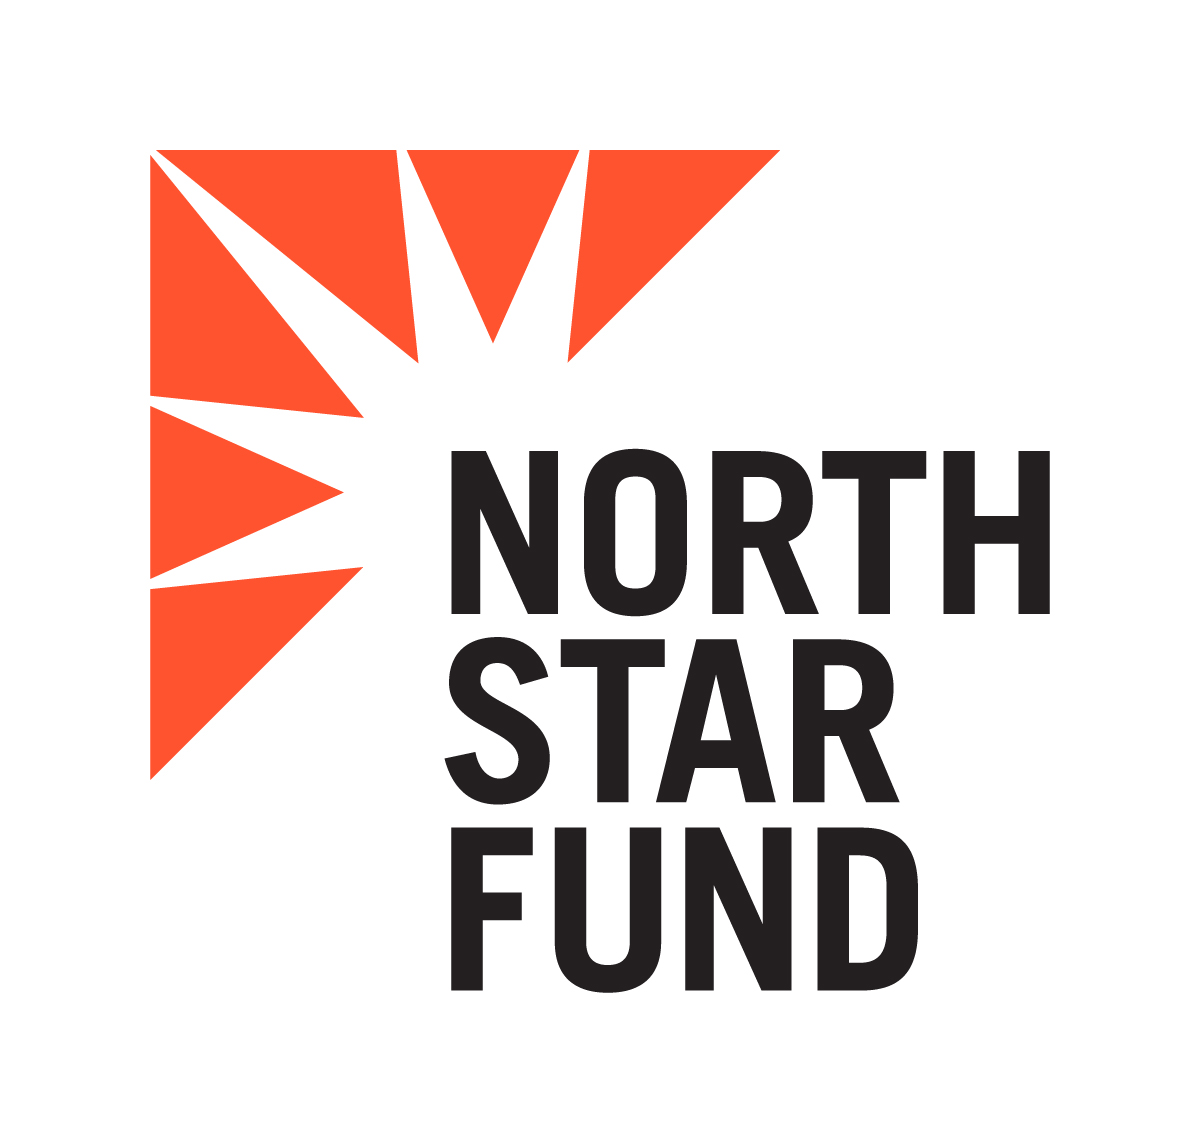 North Star Fund Community Gala